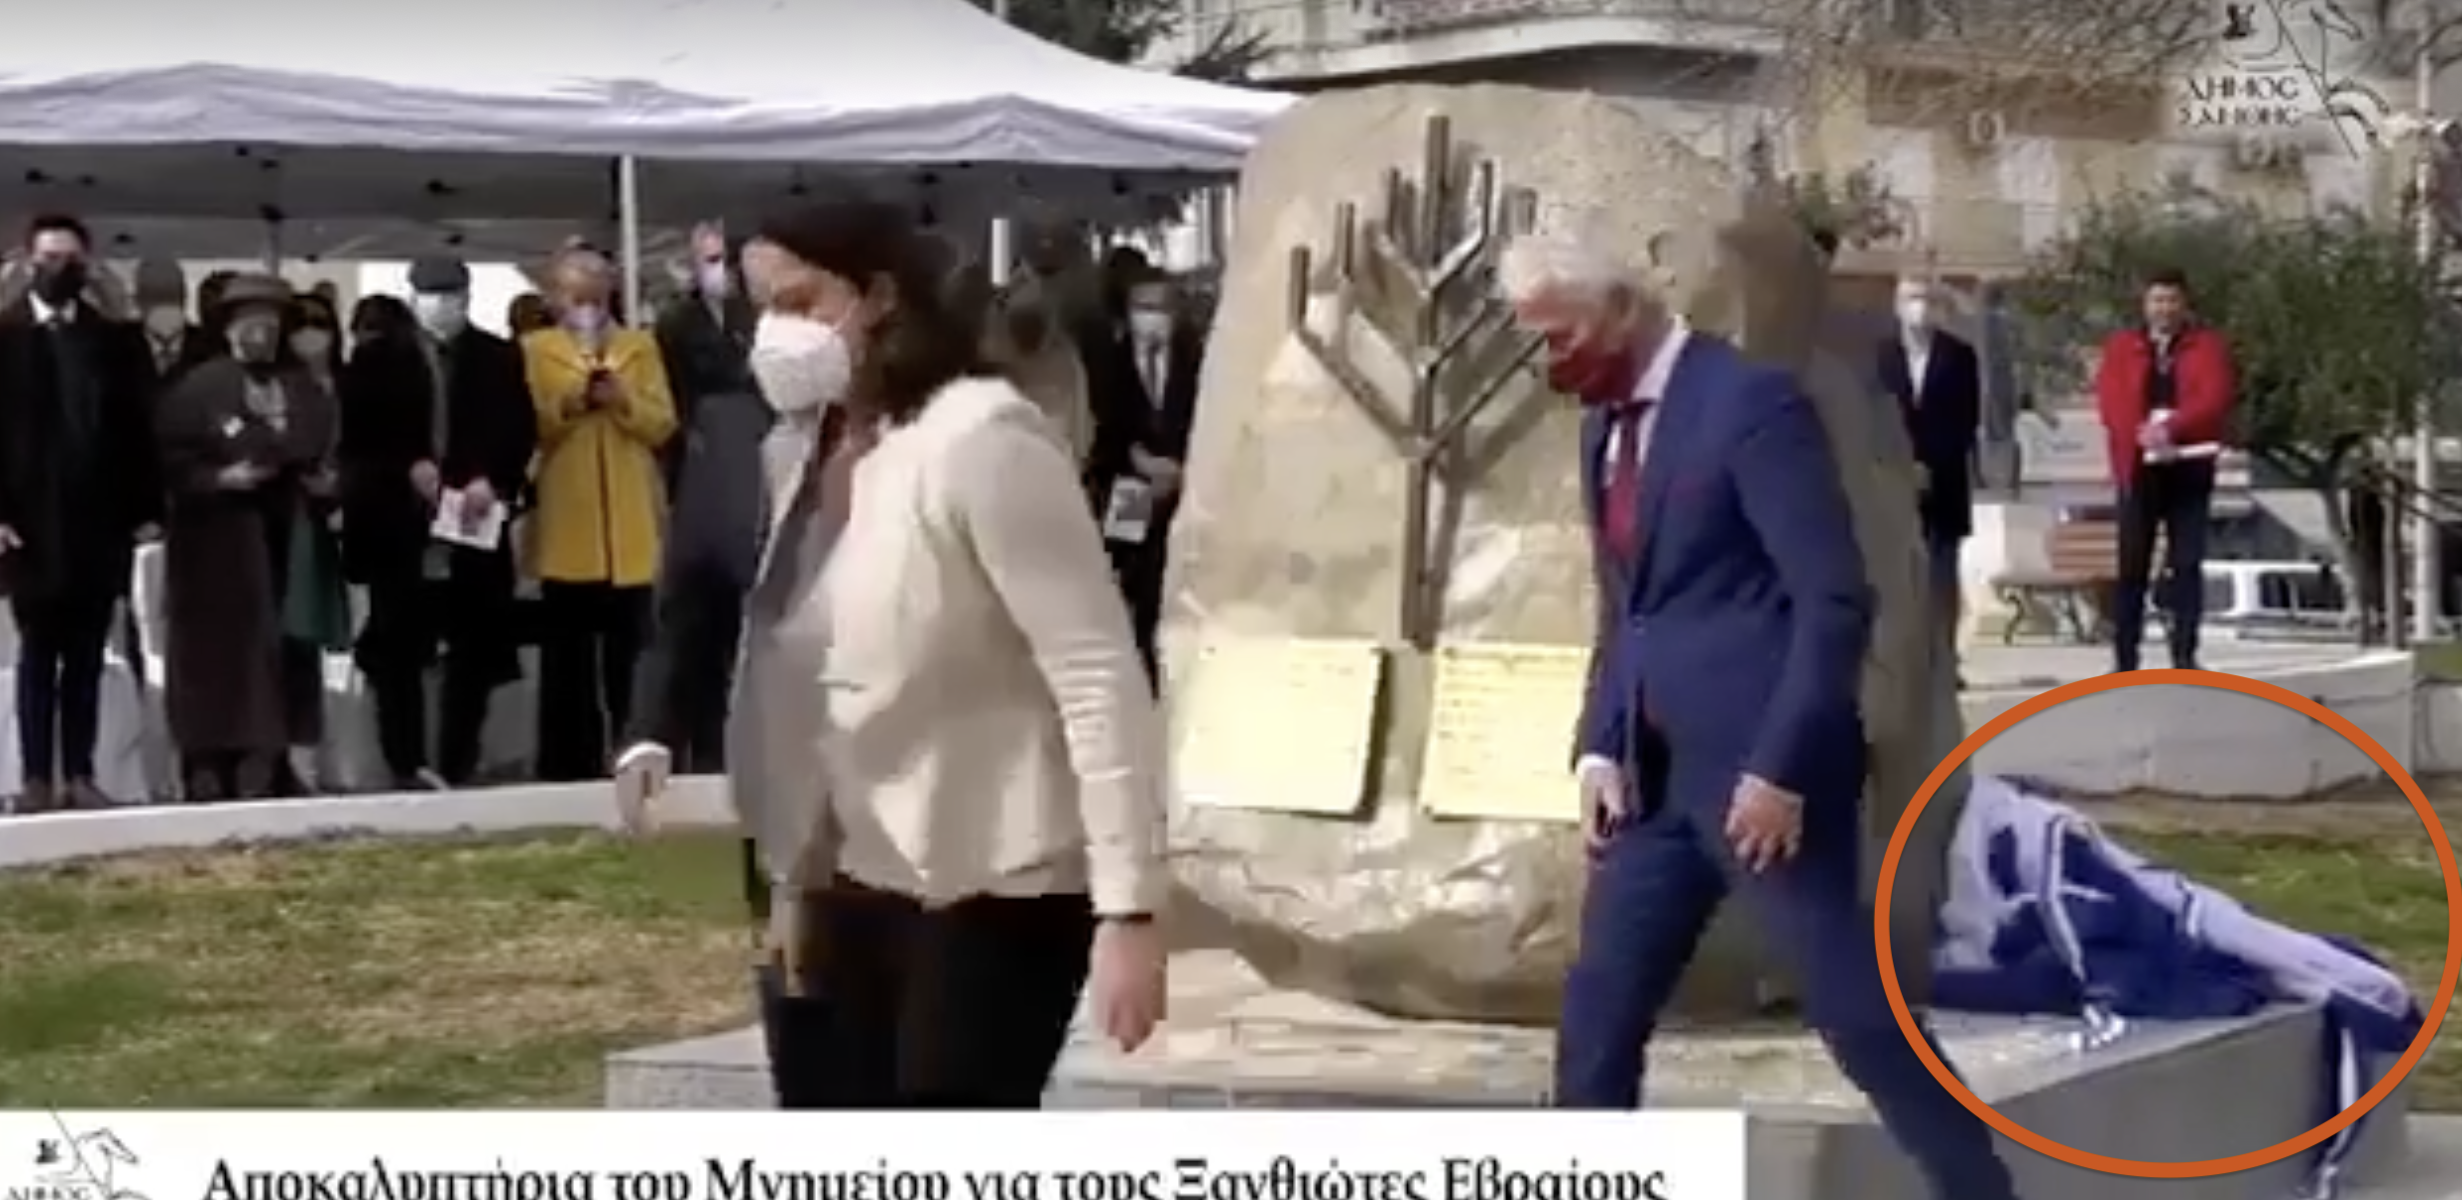 Έριξαν την ελληνική σημαία στο έδαφος και την παράτησαν εκεί! Βίντεο από αποκαλυπτήρια στη Ξάνθη